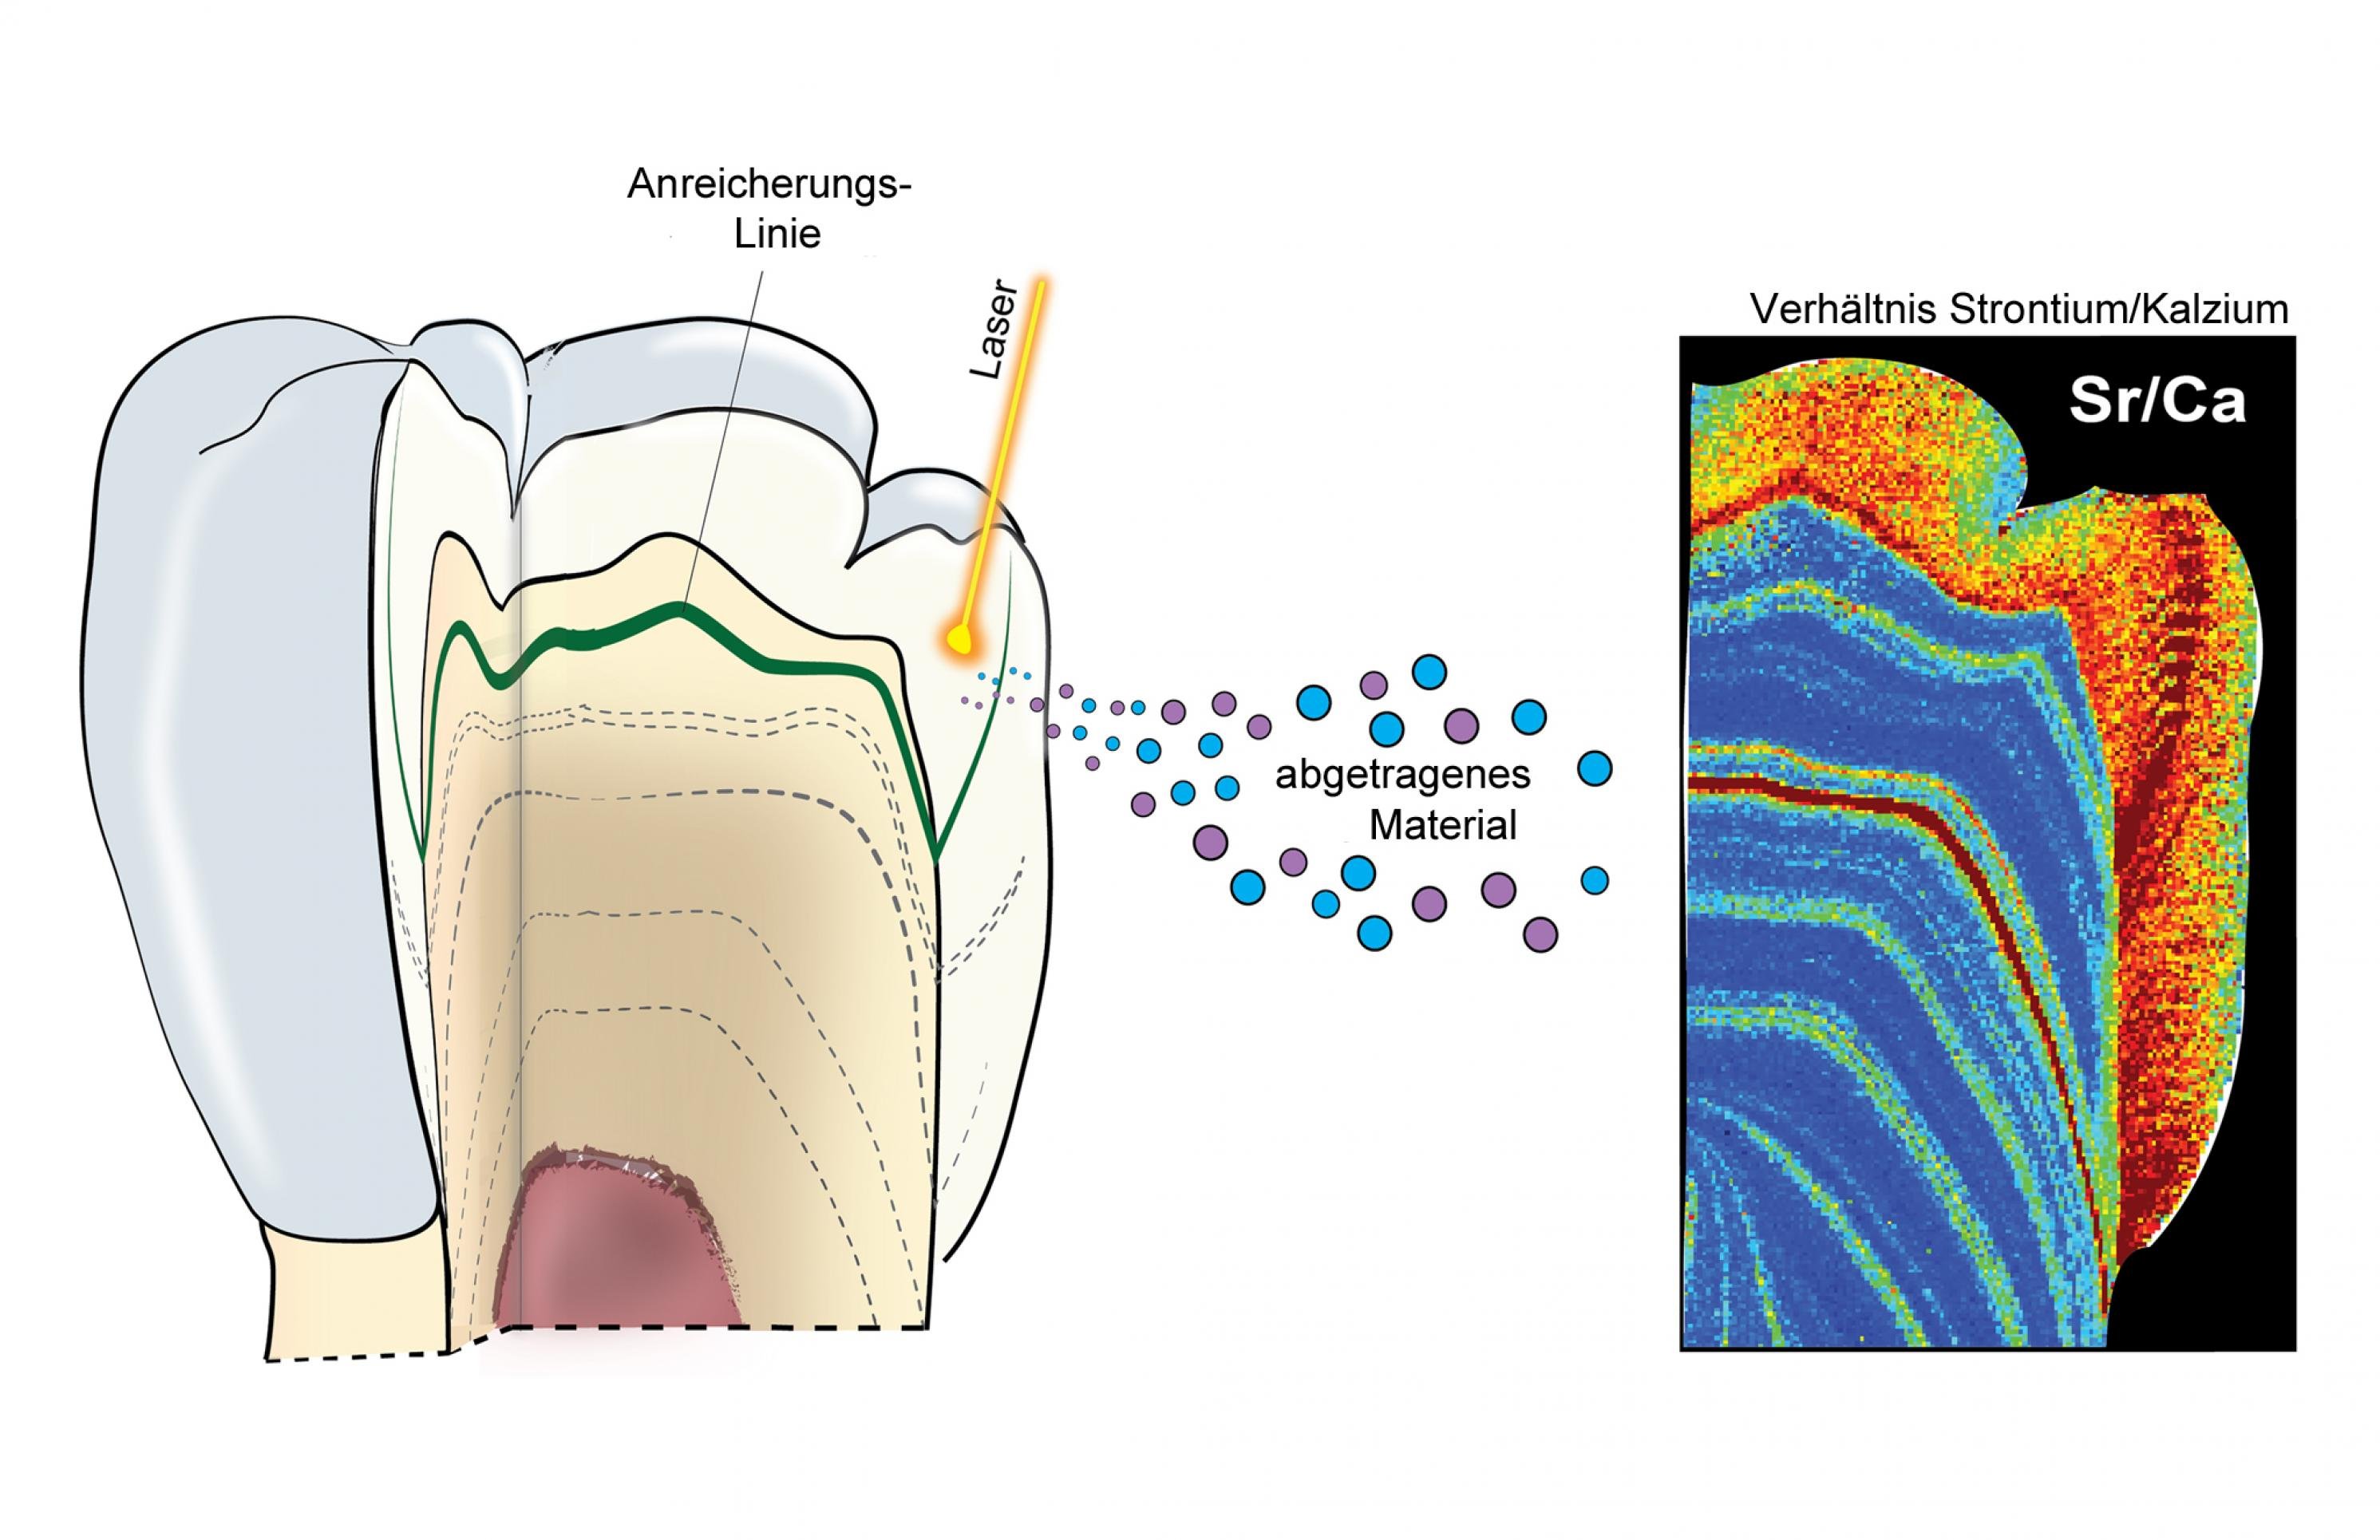 Die Illustration zeigt links einen aufgeschnittenen Zahn, dessen Inneres einen schichtweisen Aufbau erkennen lässt. Während der Zahn im Kiefer eines Kindes wächst, werden solche Schichten abgelagert – und je nach Ernährung reichern sich bestimmte Spurenelemente an. Zudem ist ein eingezeichneter Laserstrahl zu sehen, der vom Zahn winzige Mengen an Materials herauslöst, das die Forscher analysieren. Ganz rechts ist das Schnittbild eines Zahns zu erkennen, in dem das Verhältnis des Spurenelements Strontium zum Hauptelement Kalzium farbig dargestellt. Aus diesem Verhältnis können Forscher schließen, zu welchem Zeitpunkt während der Zahnentstehung ein Kind Muttermilch erhalten hat.